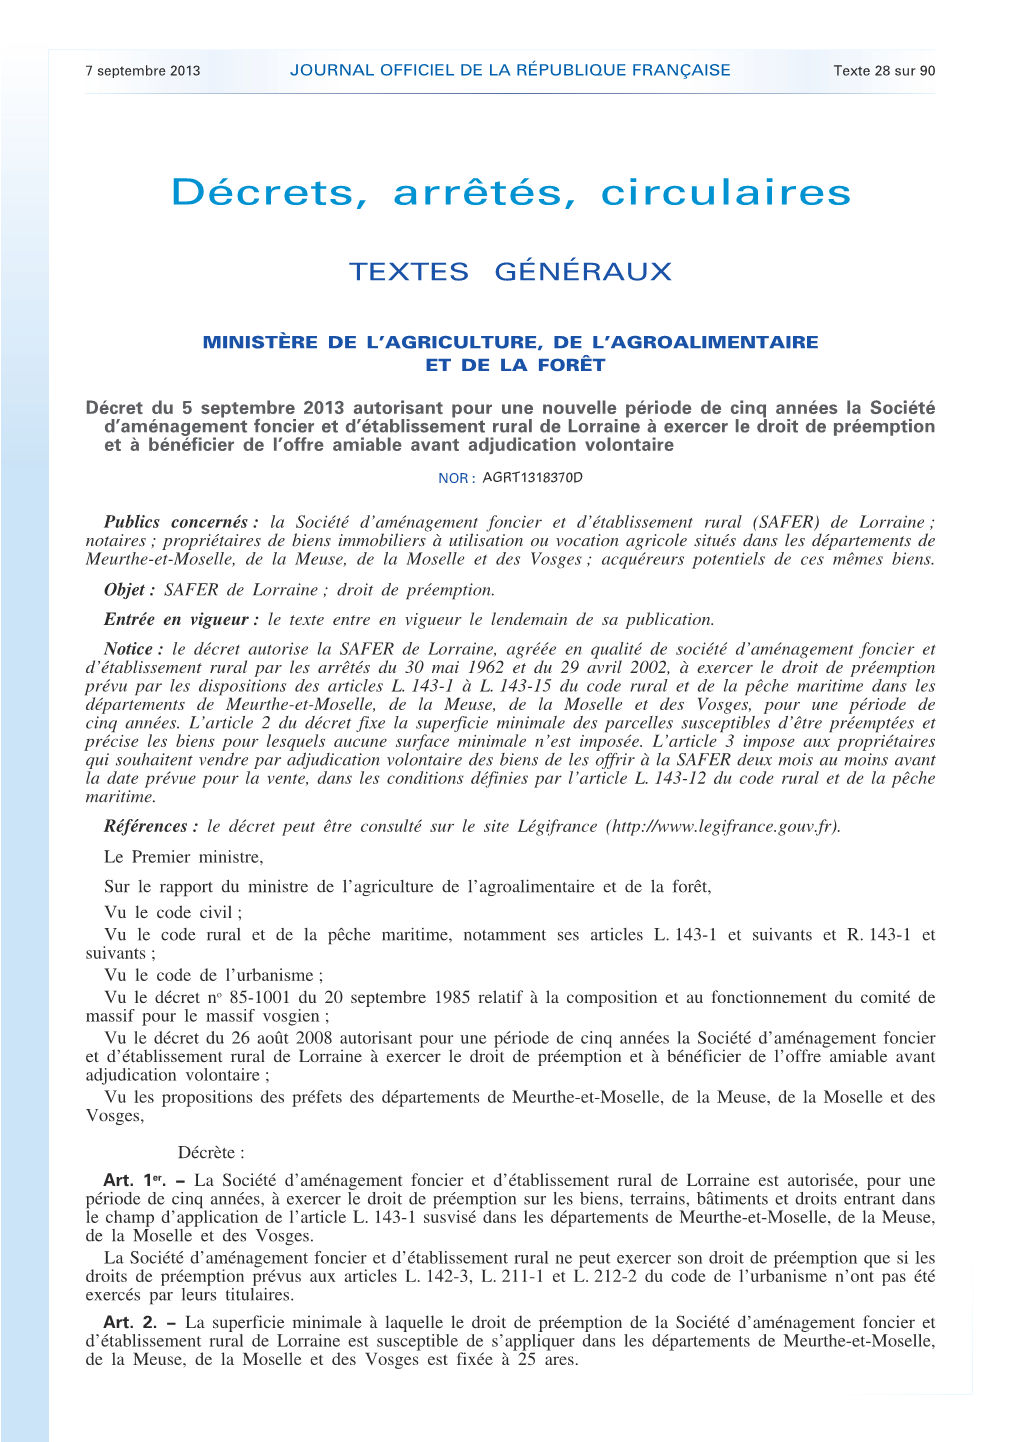 JOURNAL OFFICIEL DE LA RÉPUBLIQUE FRANÇAISE Texte 28 Sur 90